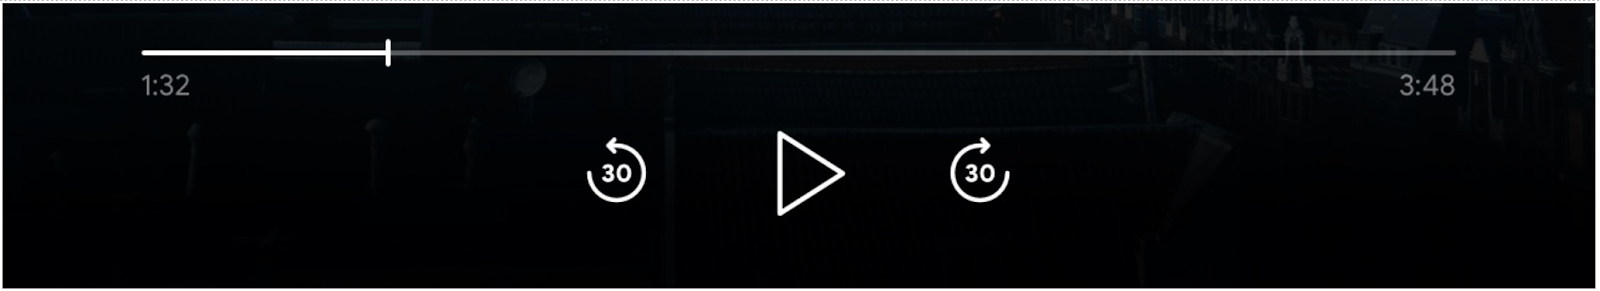 Obraz elementów sterujących odtwarzaczem: pasek postępu, przycisk „Odtwórz”, „Pomiń do przodu” i „Pomiń do tyłu”